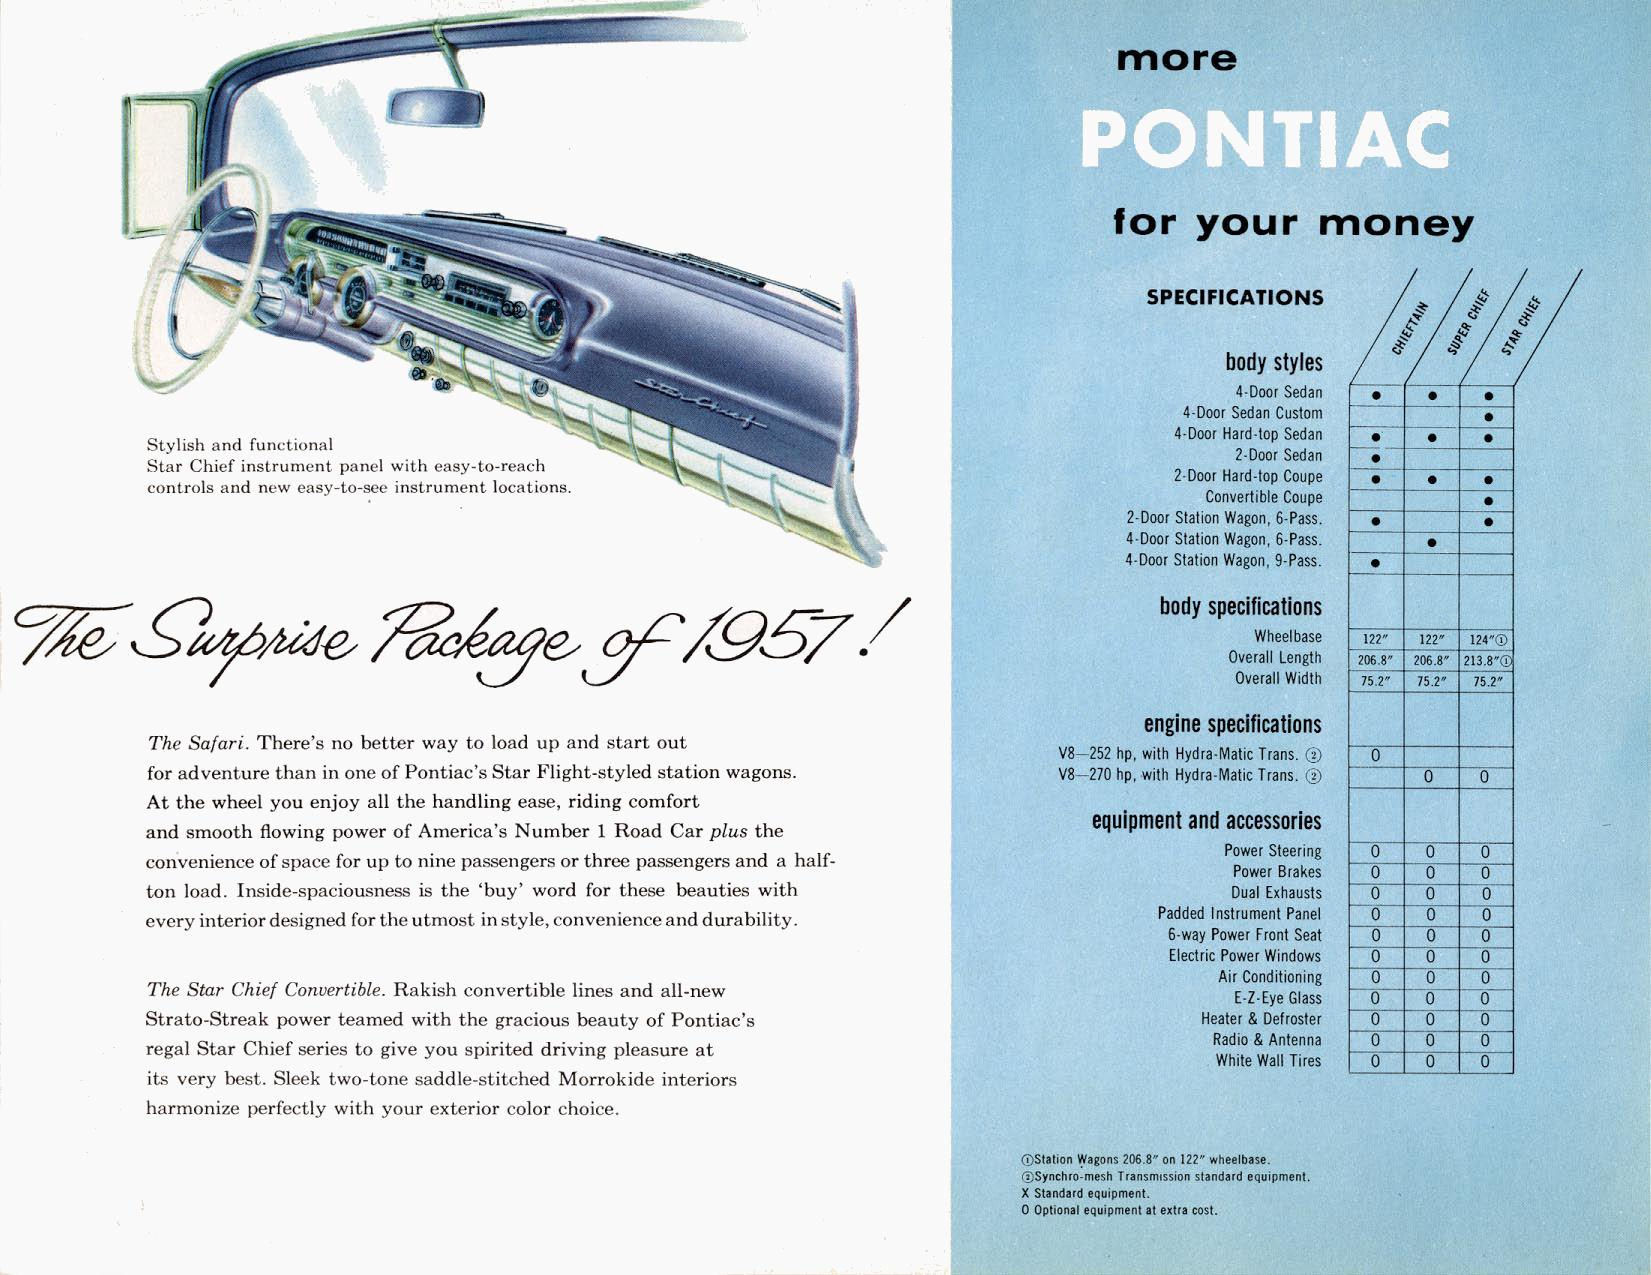 General_Motors_for_1957-11